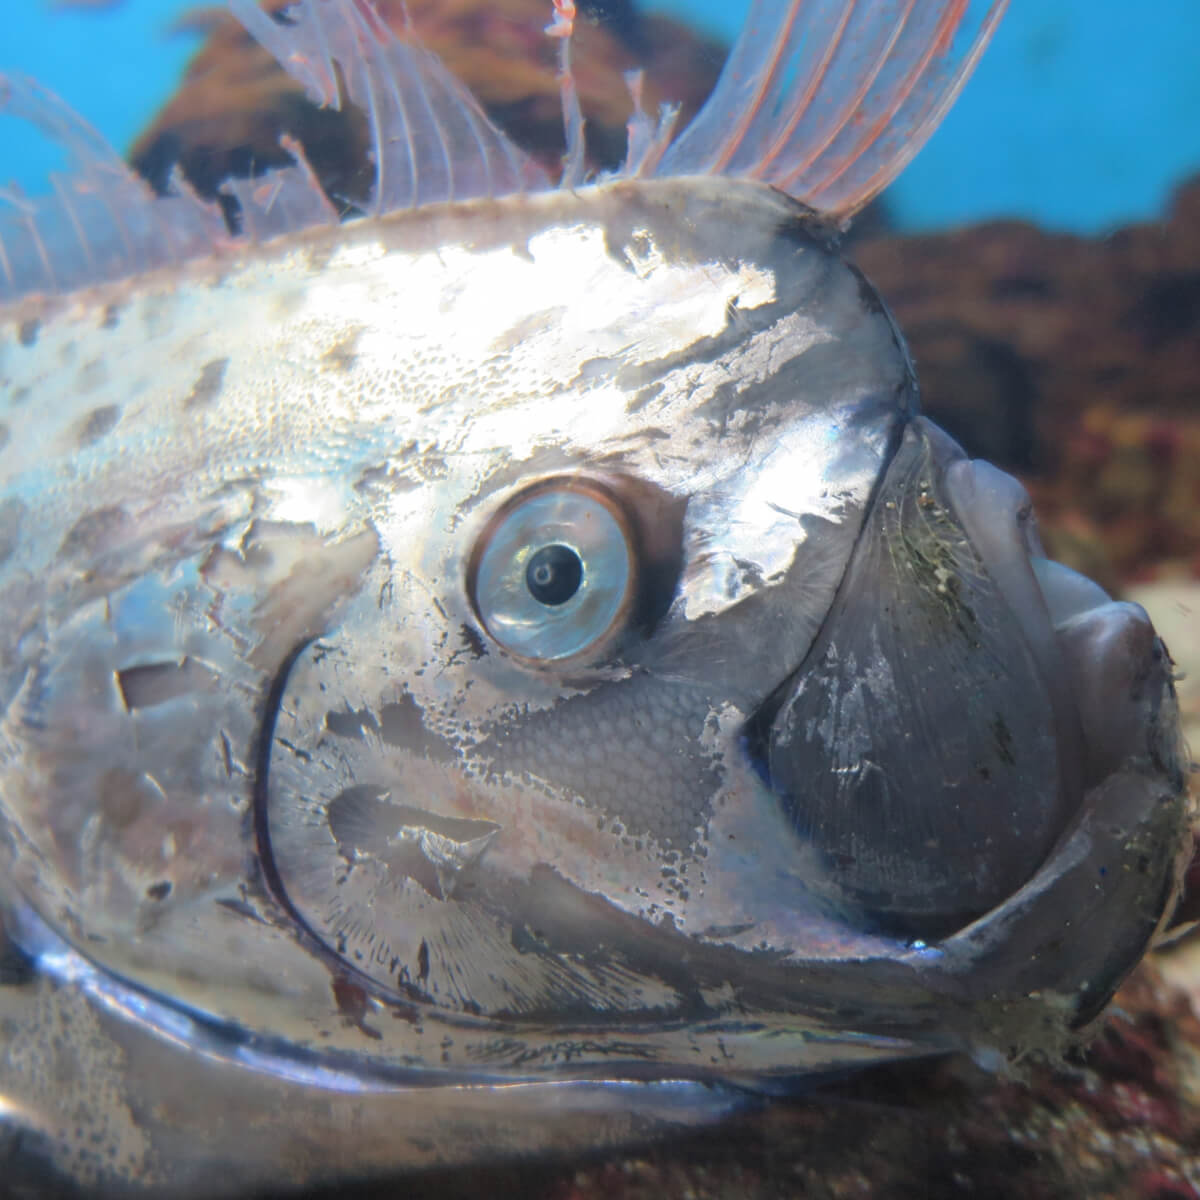 気候変動の影響 リュウグウノツカイより珍しい深海魚が続々捕獲のナゾ Asagei Biz アサ芸ビズ